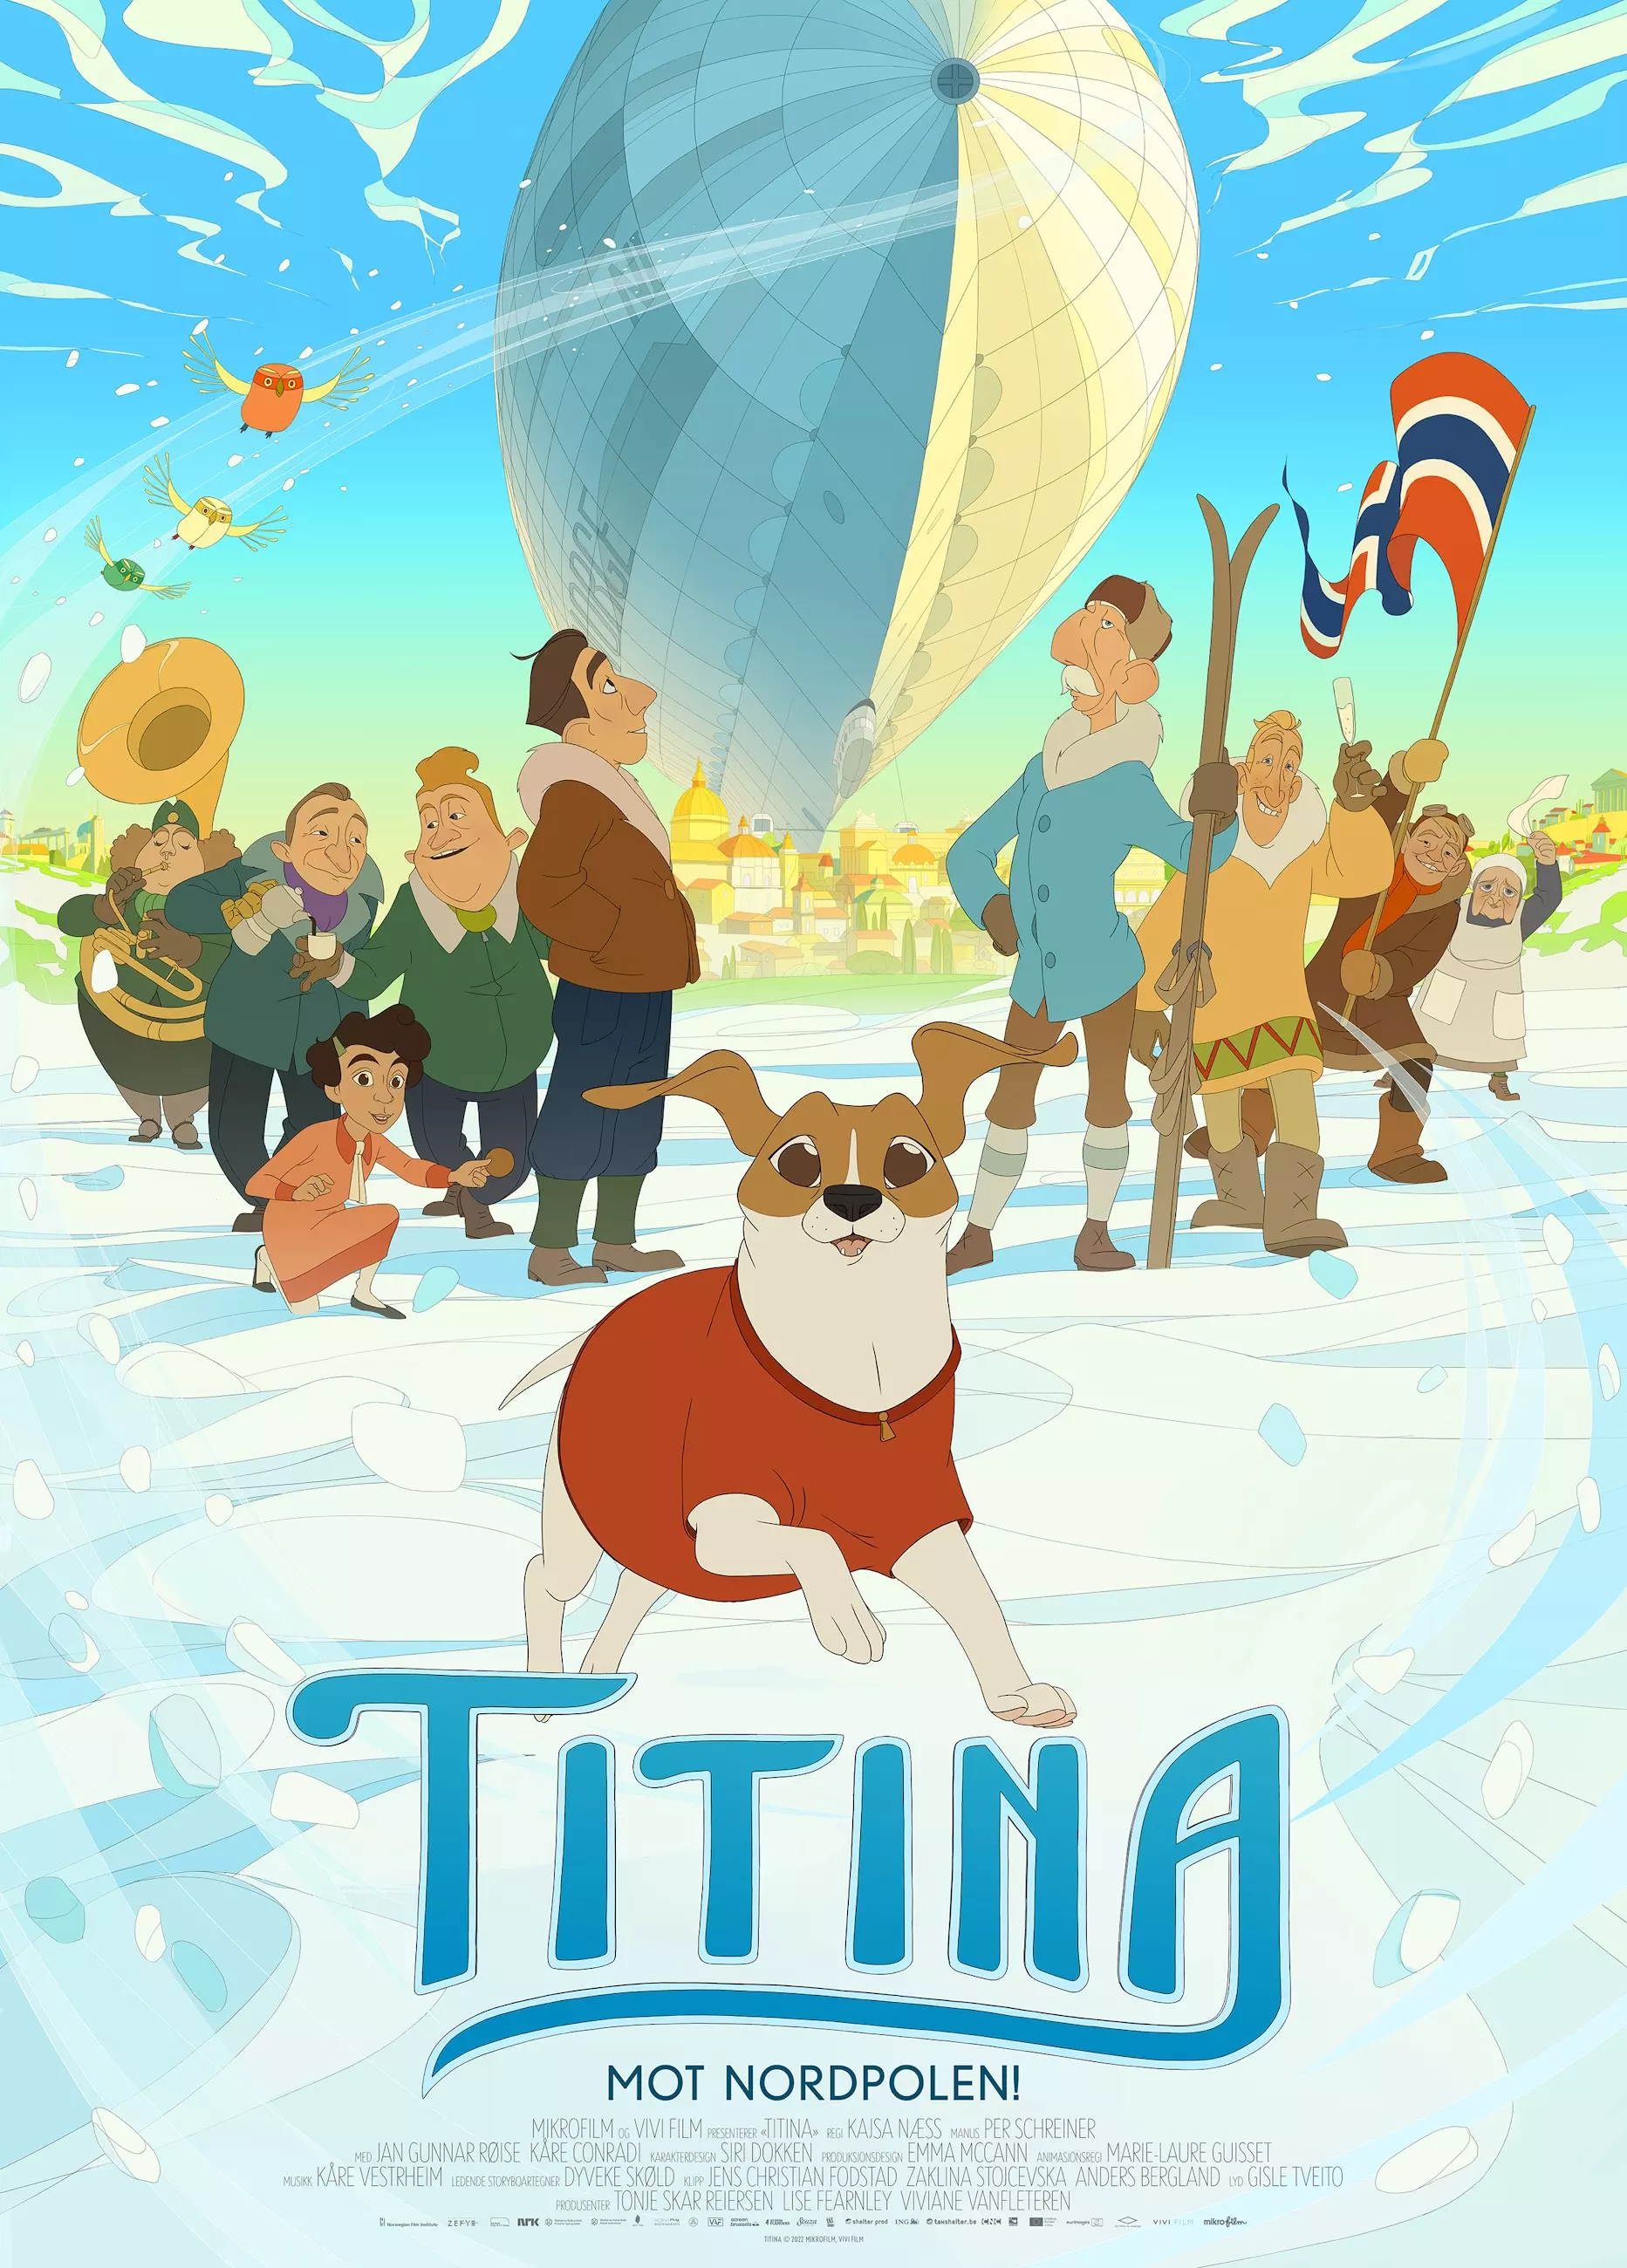 Filmplakat for animasjonsfilmen "TITINA" i stående format. Foran i bildet ser vi den glade hunden Titina, som ser mot kameraet ikledd en slags hundegenser. Bak hunden er det en rekke mennesker med alt fra flagg og ski til instrumenter. De står under et stort luftskip. Det ser ut som de står på is. Nederst på plakaten står teksten "TITINA - mot nordpolen!" i blå bokstaver. 